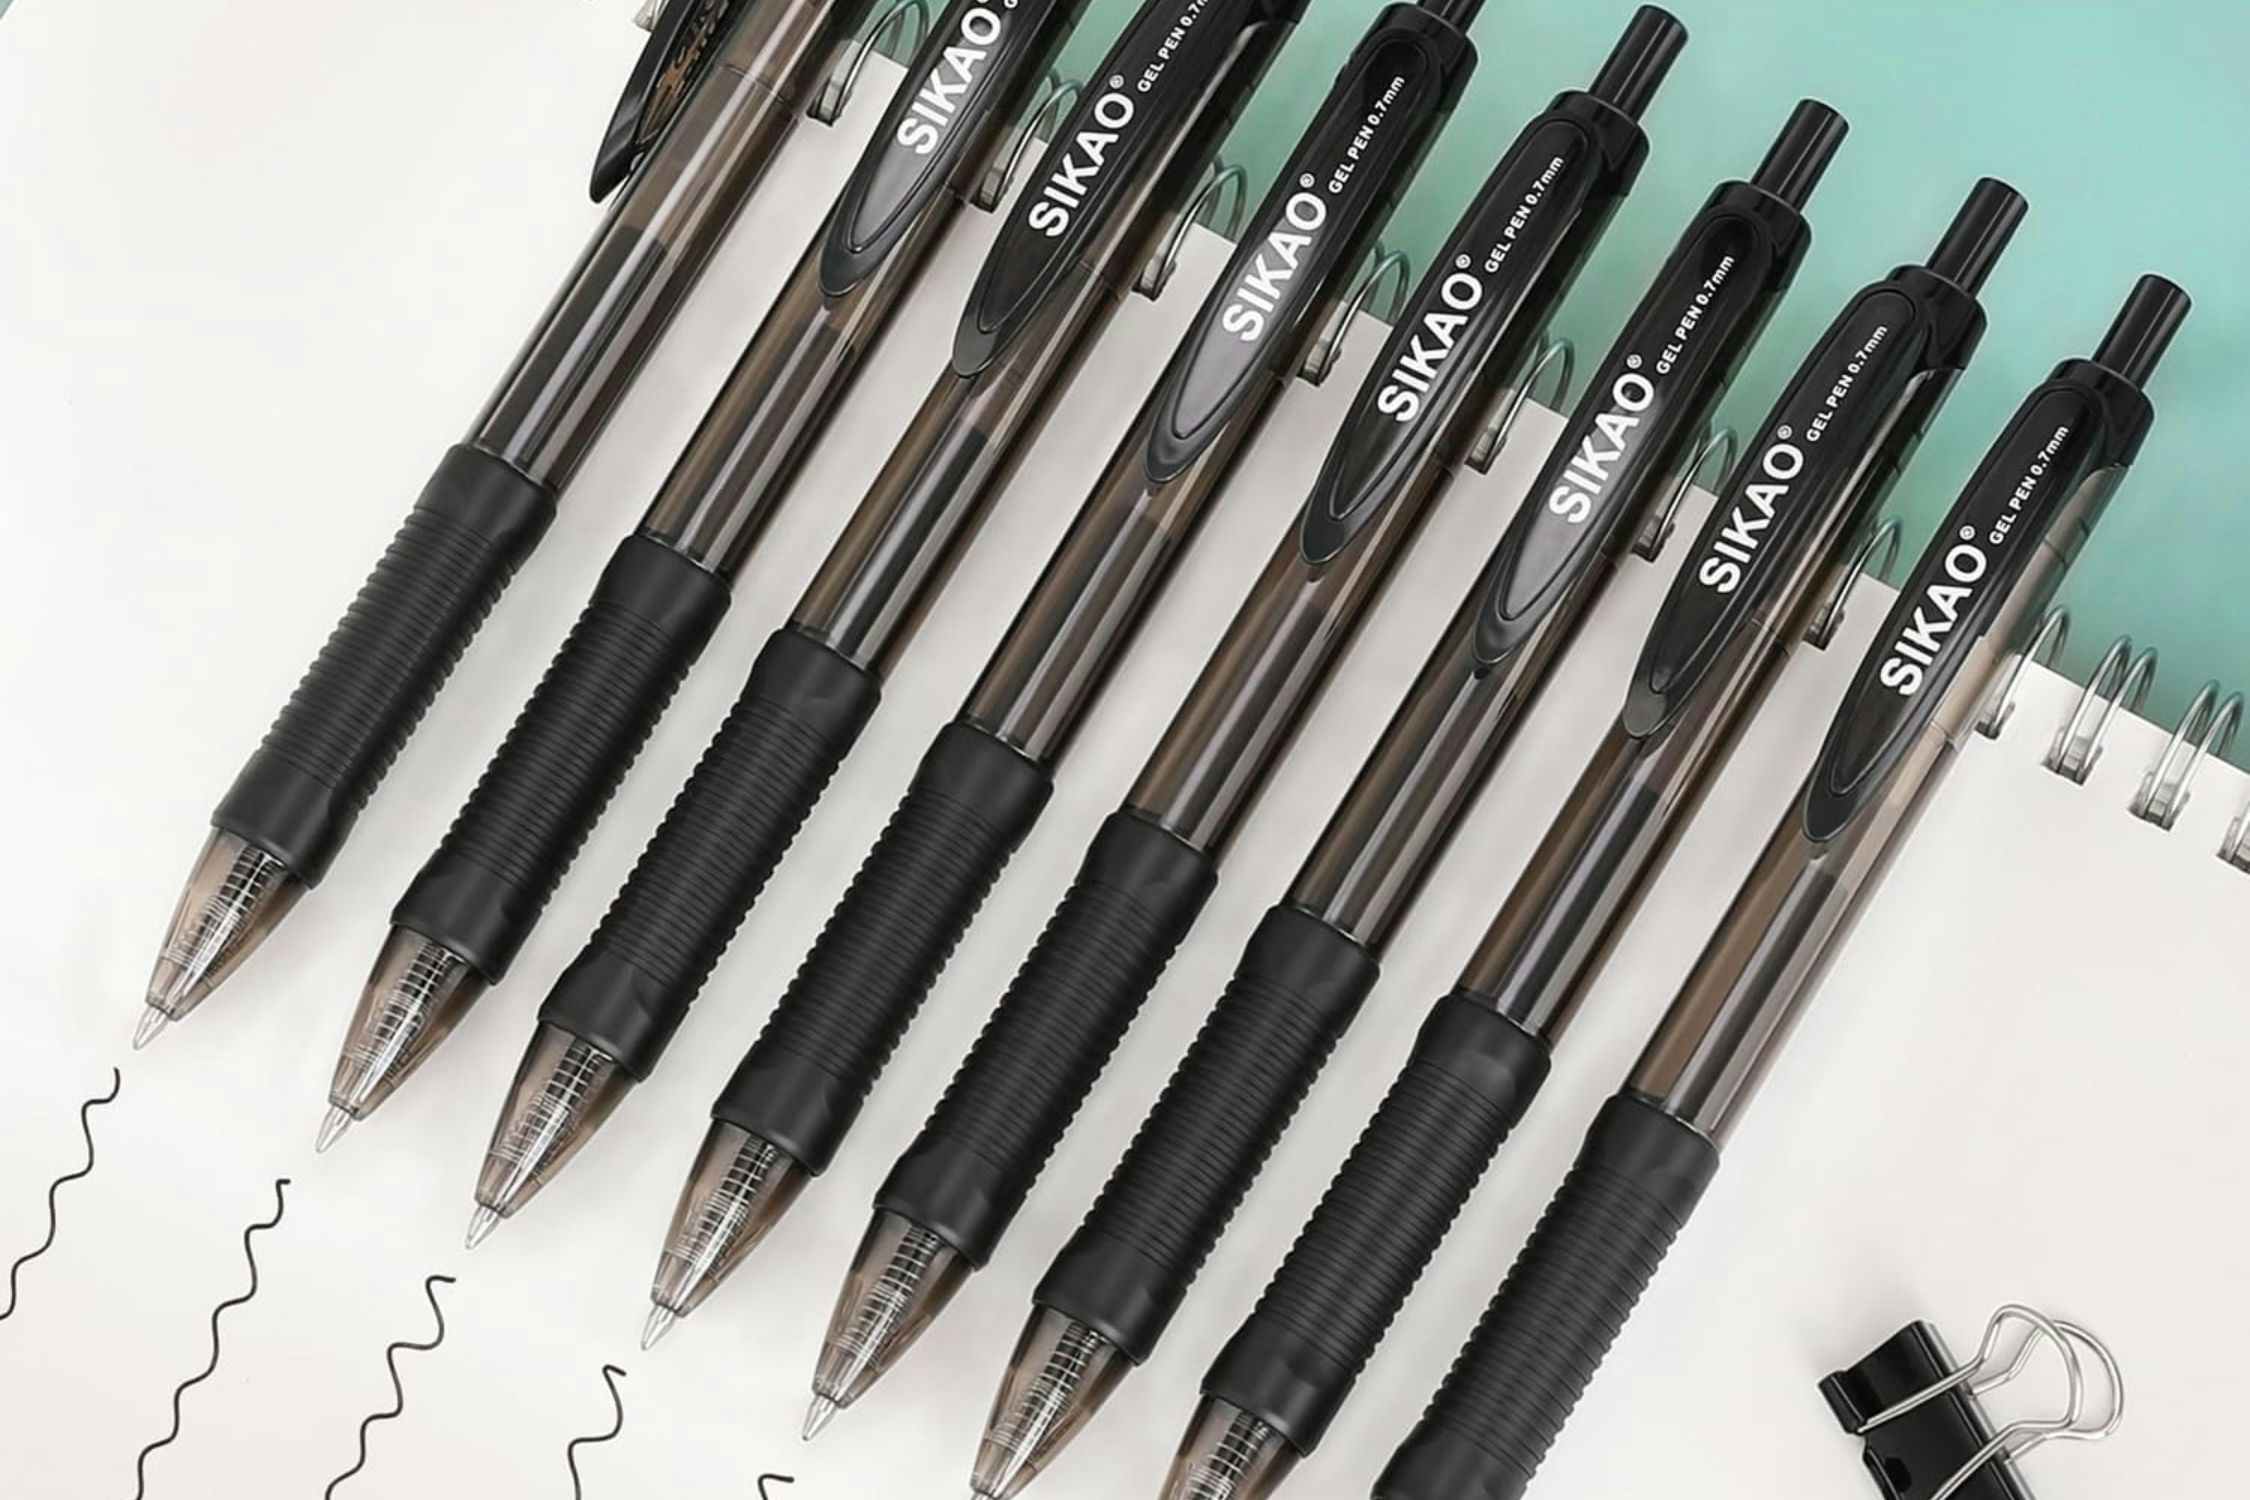 Black Gel Pens 12-Pack, as Low as $2.57 on Amazon